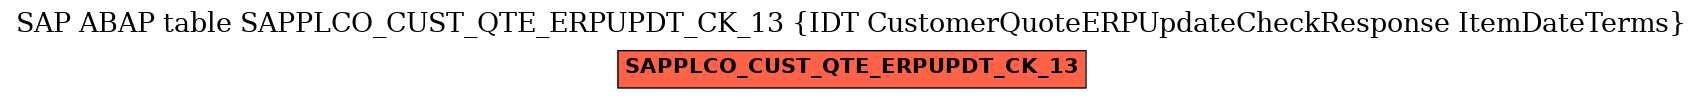 E-R Diagram for table SAPPLCO_CUST_QTE_ERPUPDT_CK_13 (IDT CustomerQuoteERPUpdateCheckResponse ItemDateTerms)